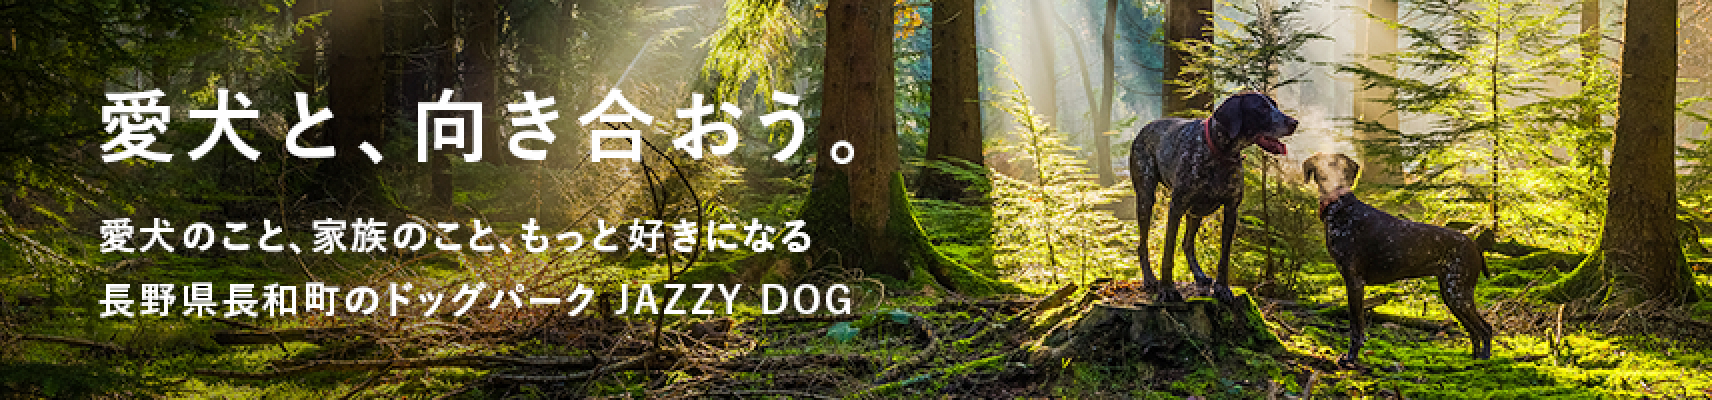 長野県長和町のドッグパーク JAZZY DOG